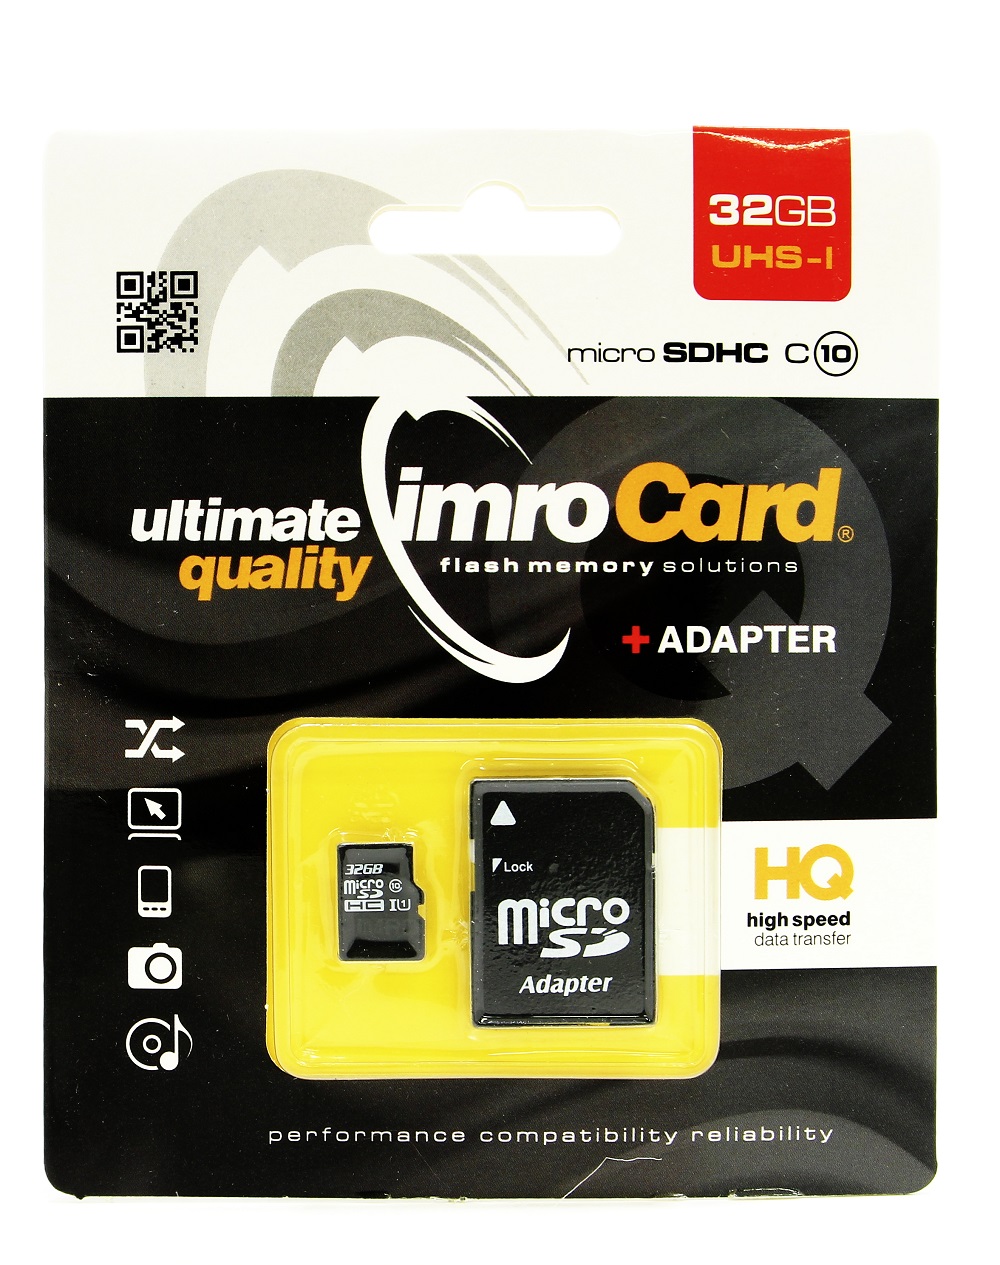 Imro Micro SD